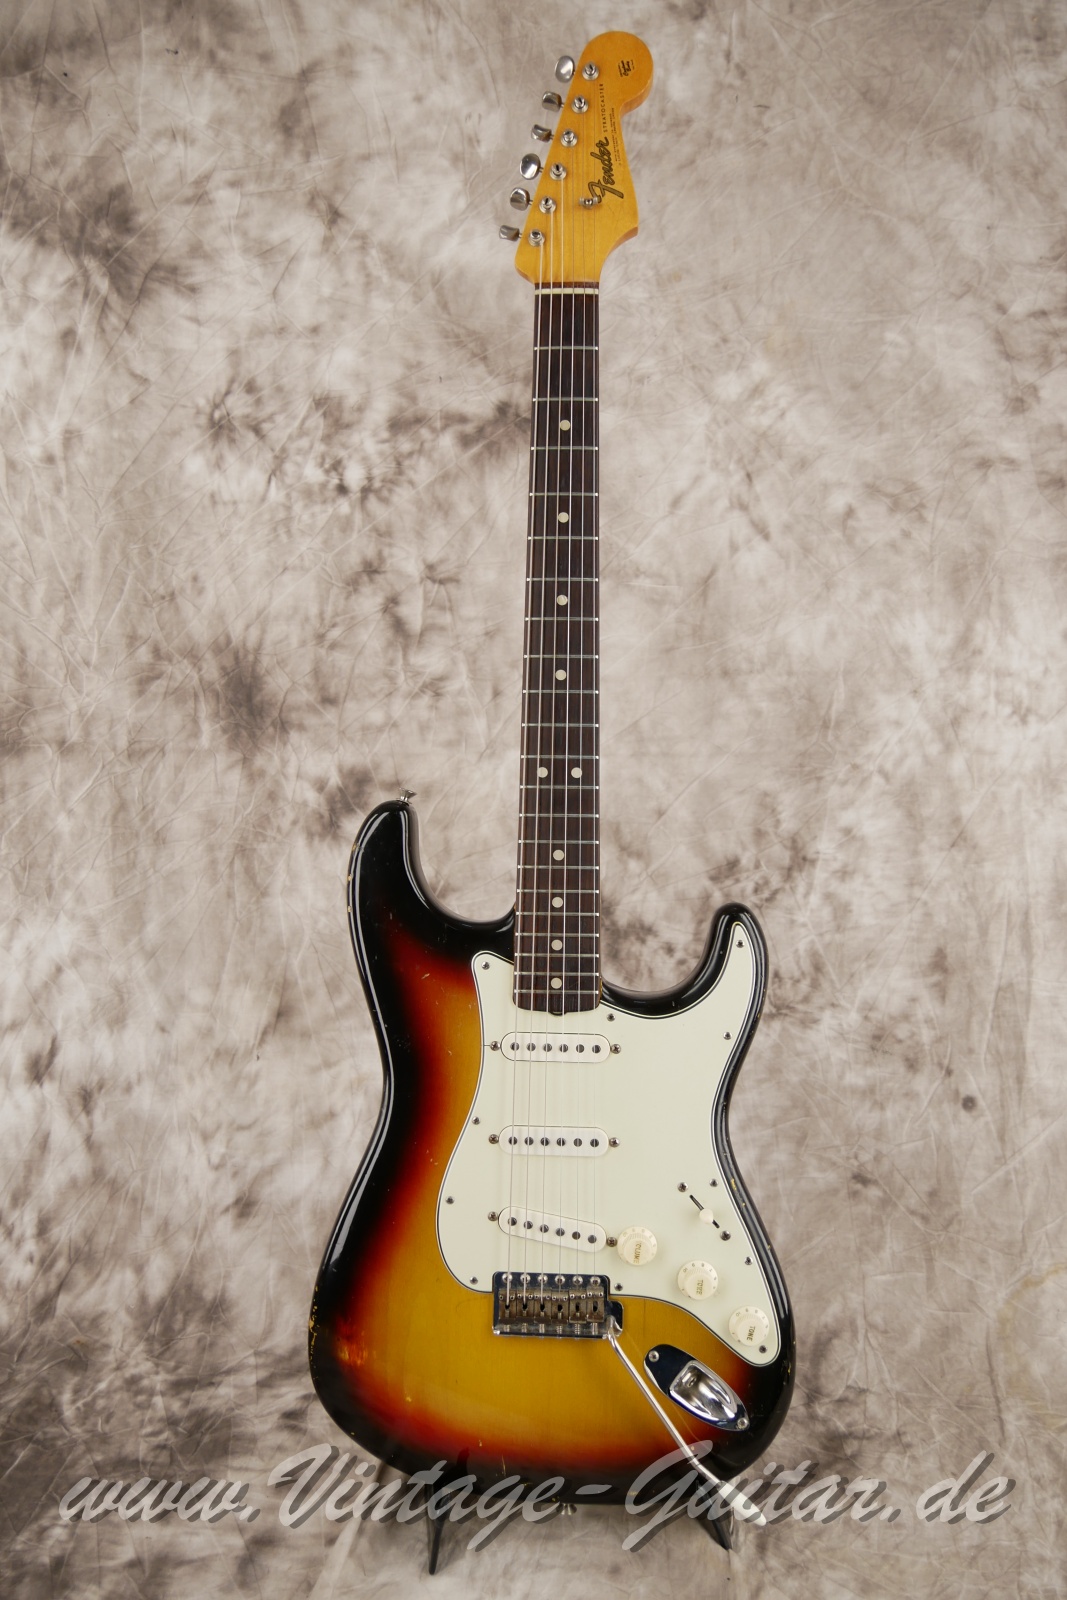 Fender-Stratocaster-1965-sunburst-001.JPG